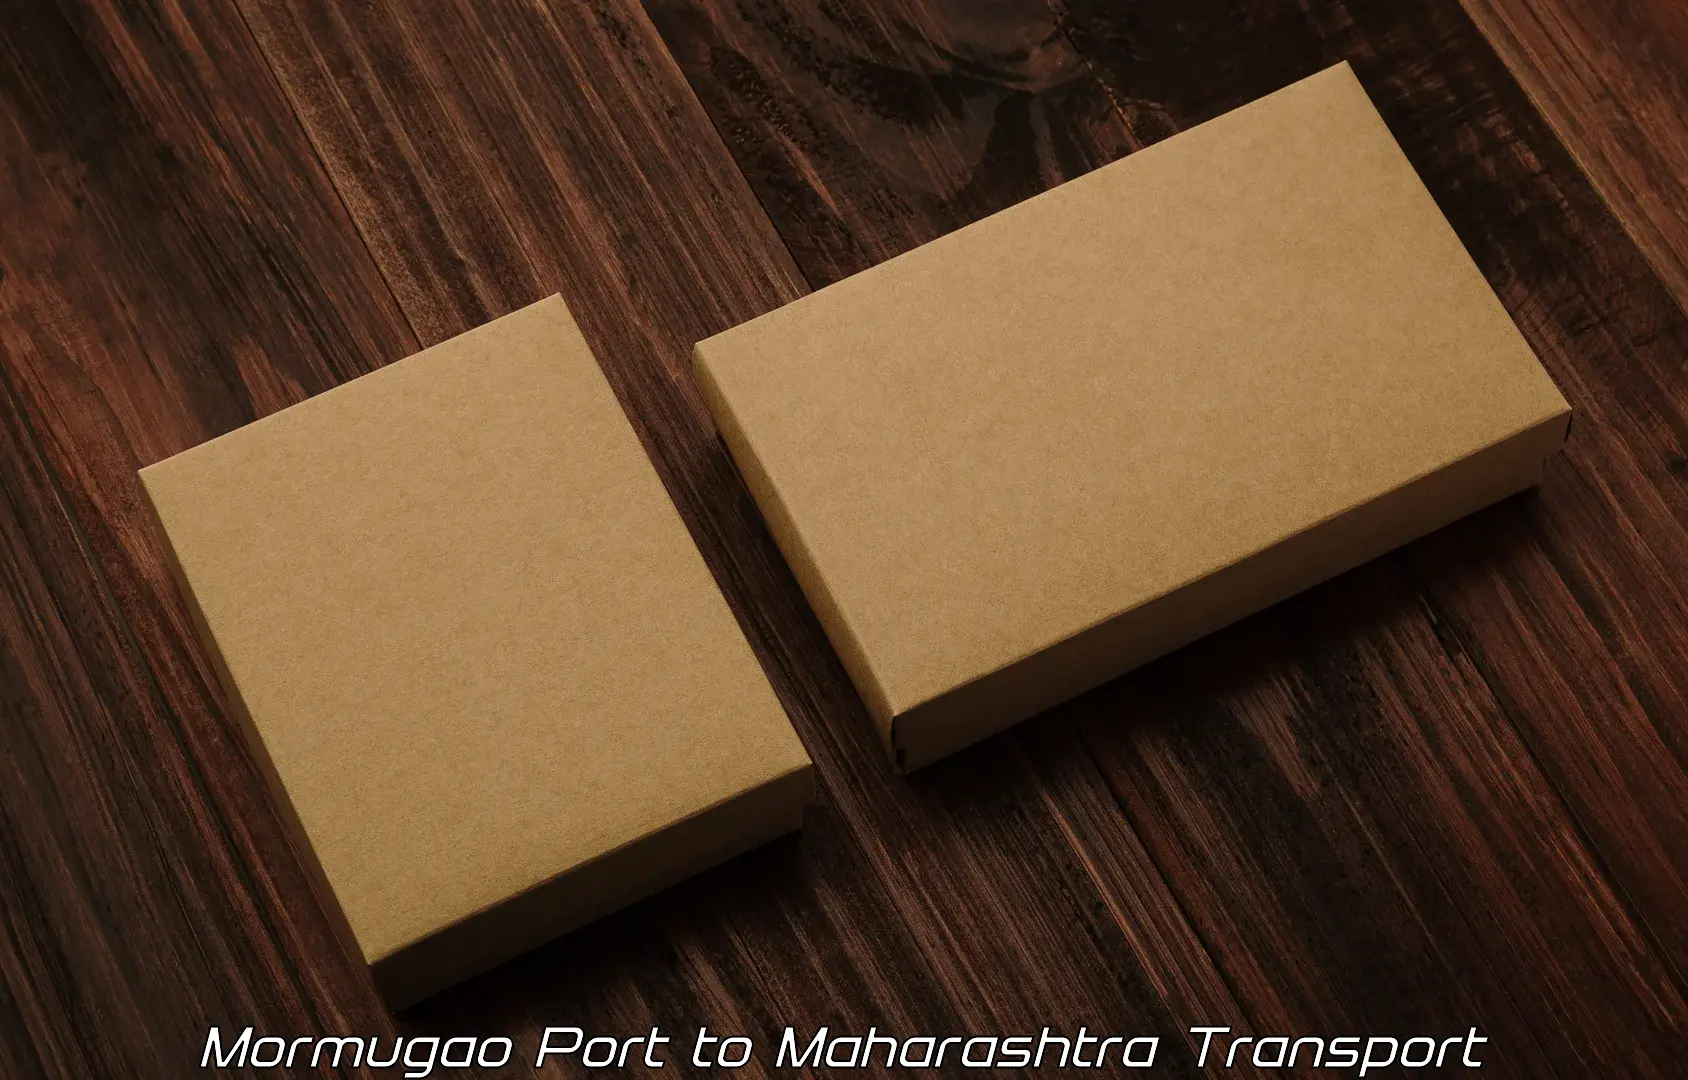 Daily parcel service transport Mormugao Port to Partur